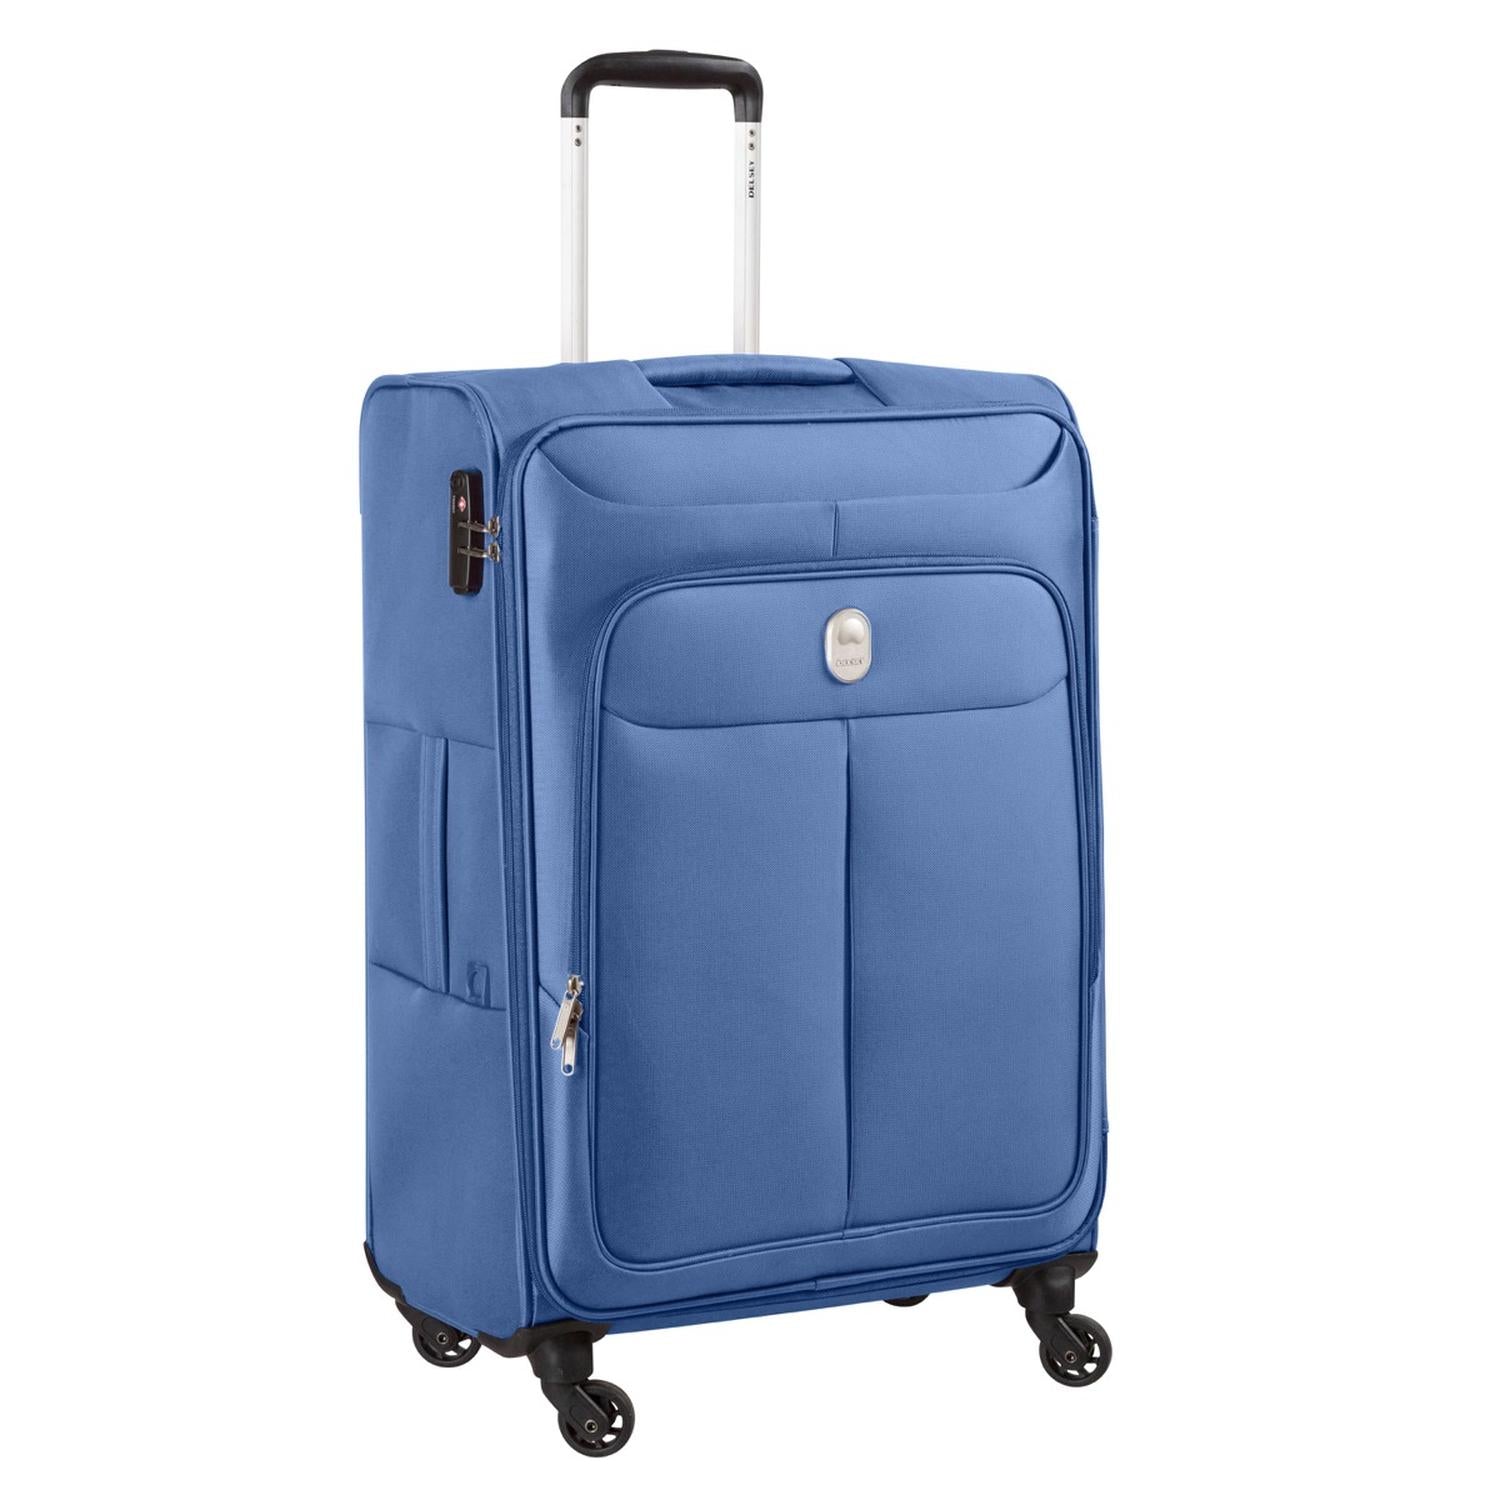 Delsey Maleta De Viaje de Tela de Cabina ORBA 55 cm con TSA, Color Azul